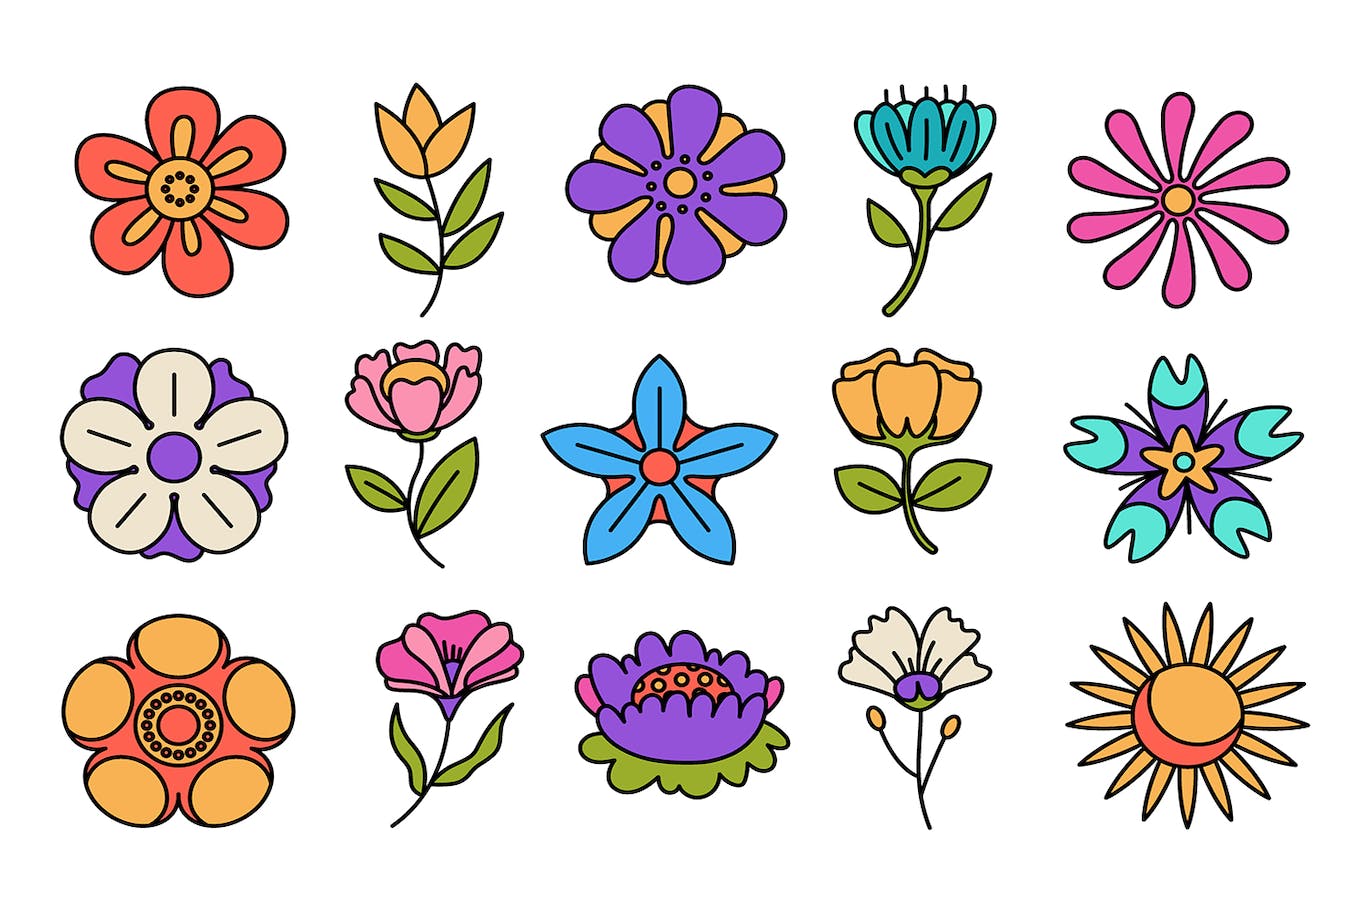 春天花朵矢量插画集 Spring Flower Illustration Set 设计素材 第2张